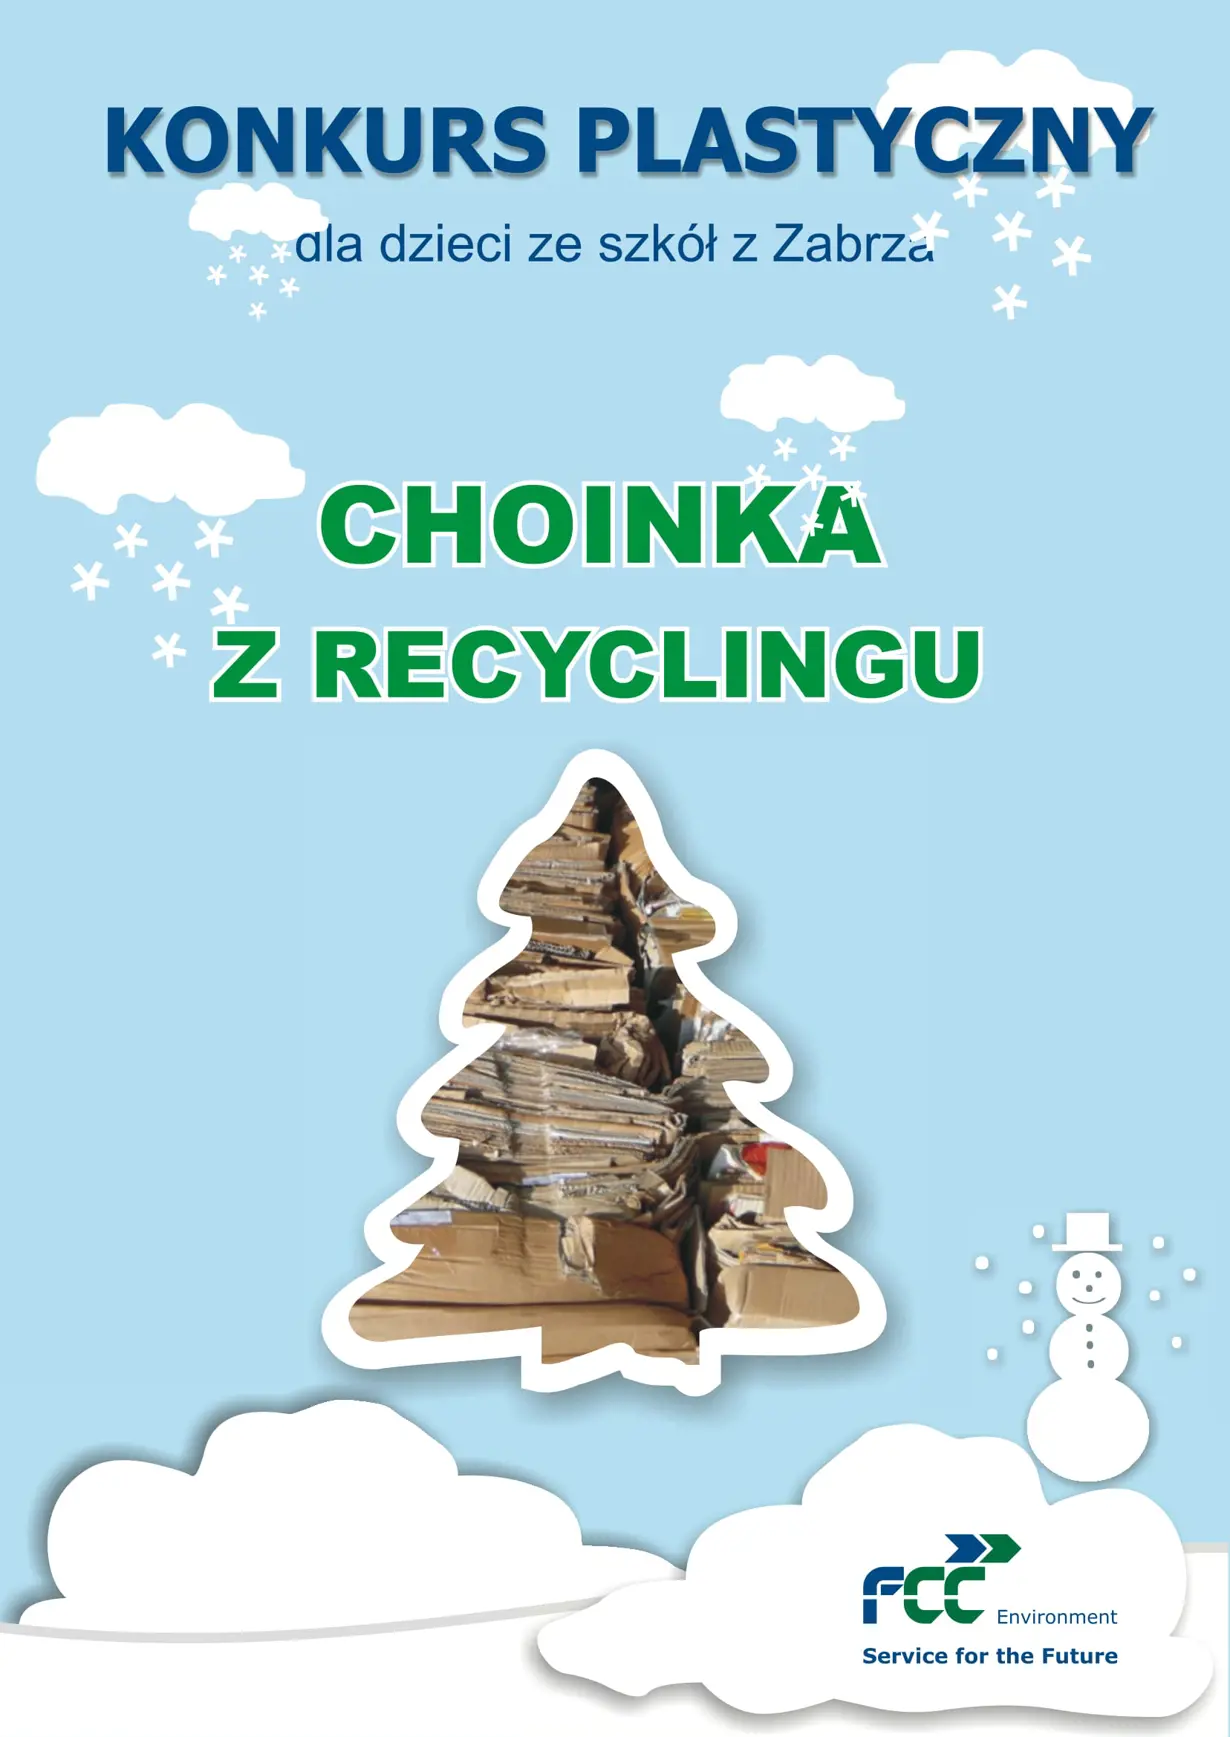 Konkurs „Choinka z recyclingu” rozstrzygnięty!